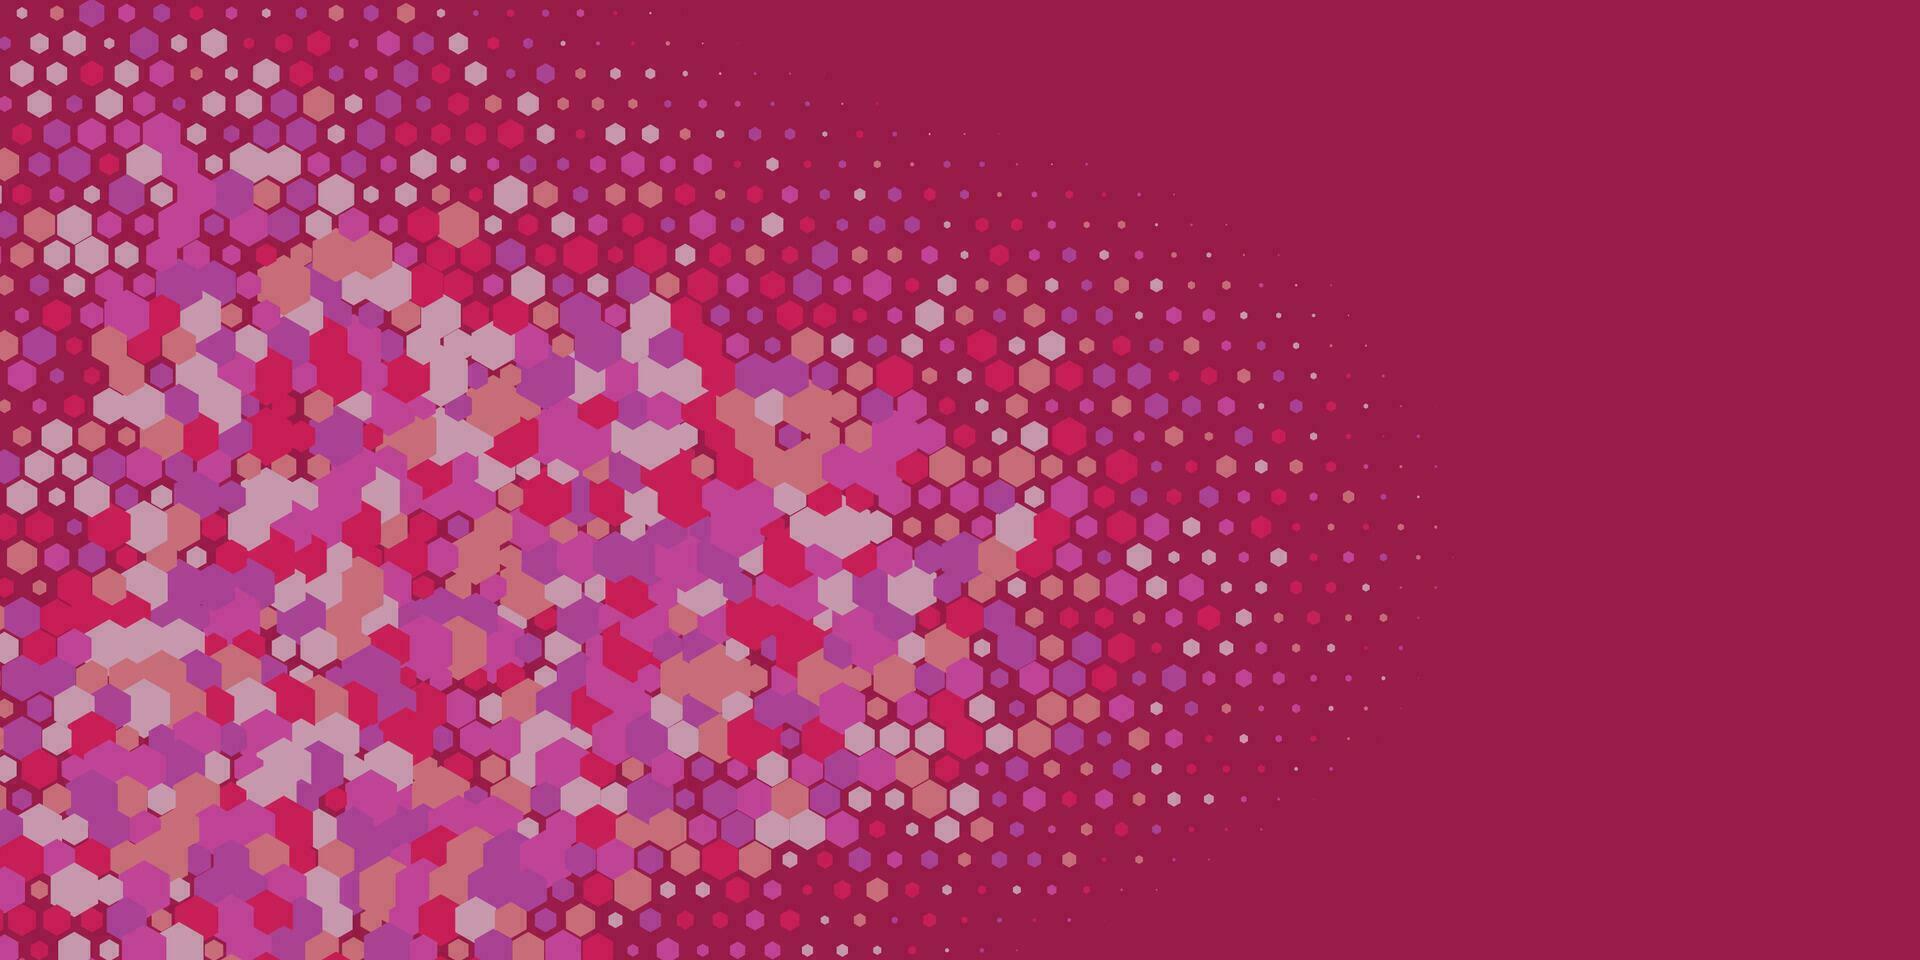 meetkundig abstract zeshoek multi kleur achtergrond vector